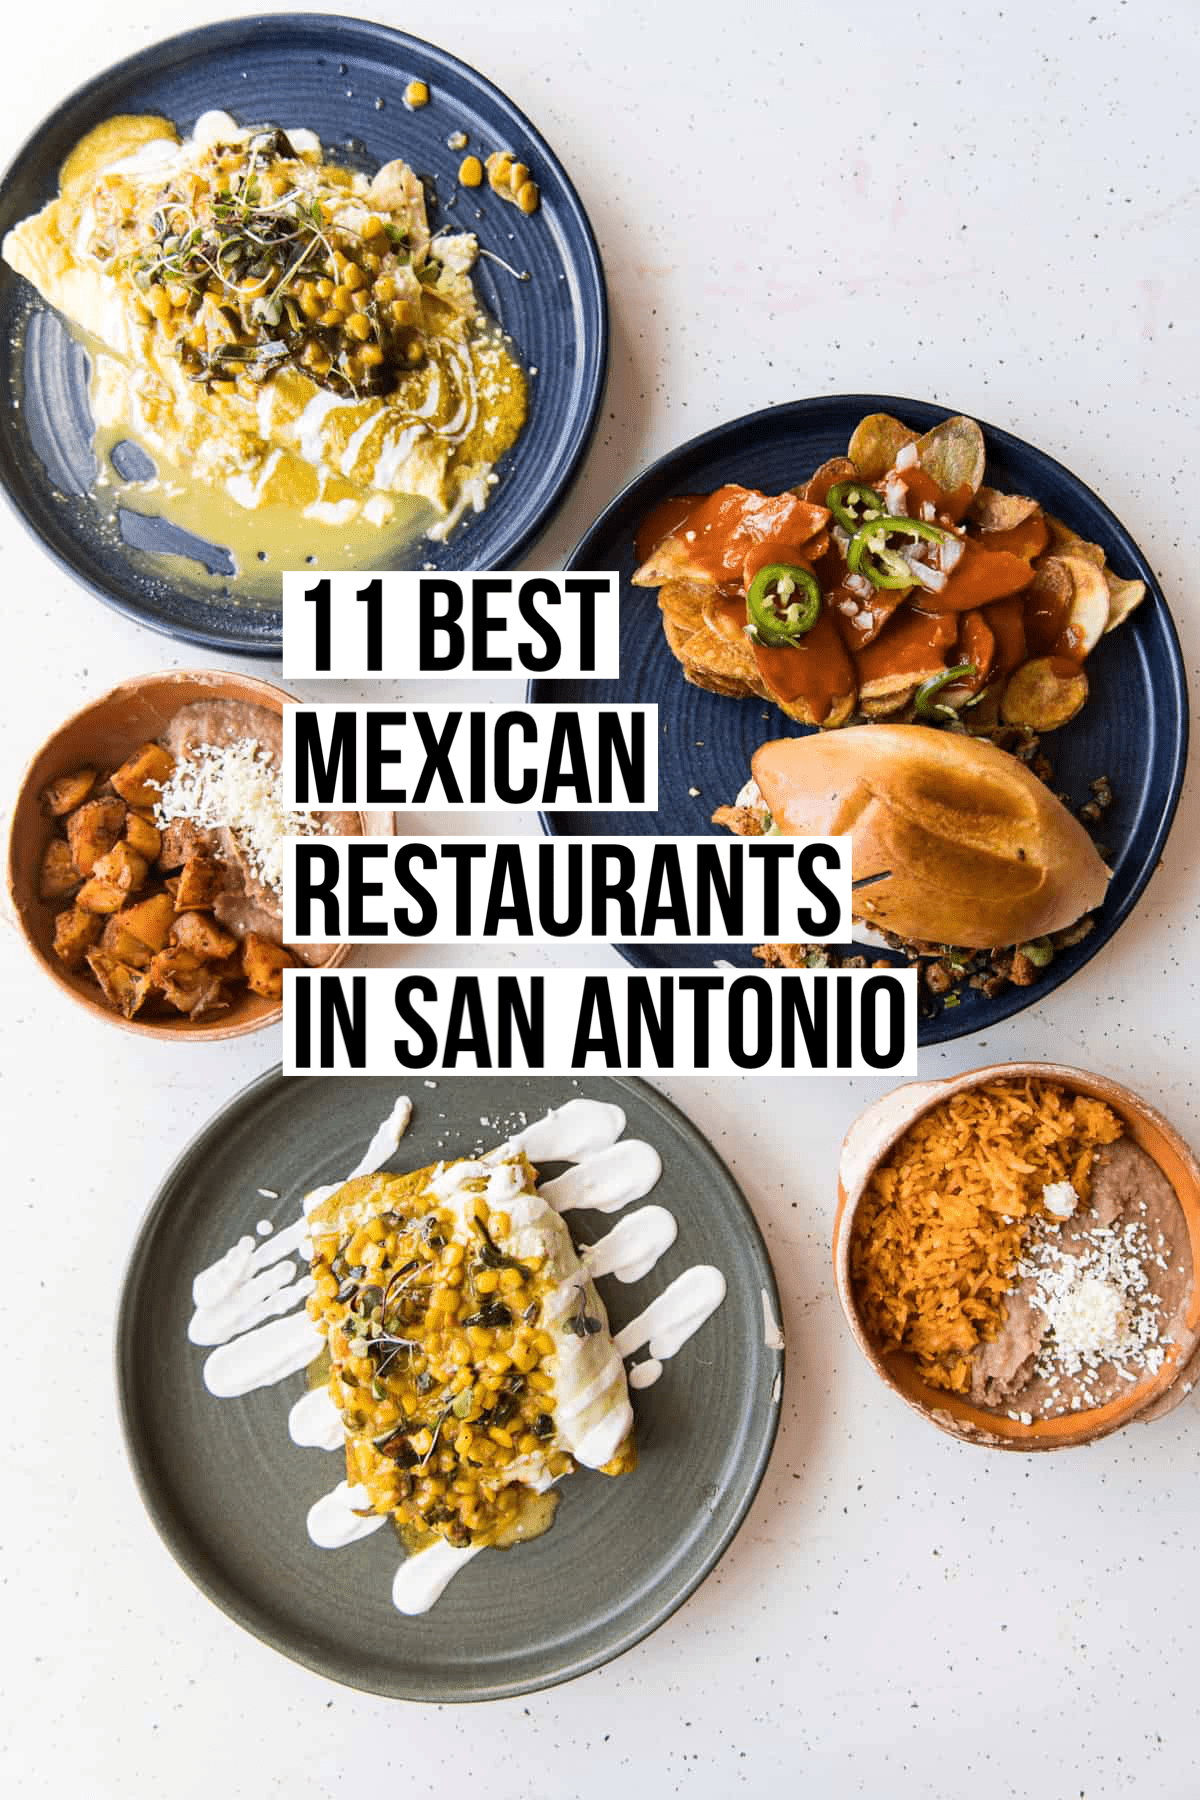 11 Best Mexican Restaurants in San Antonio